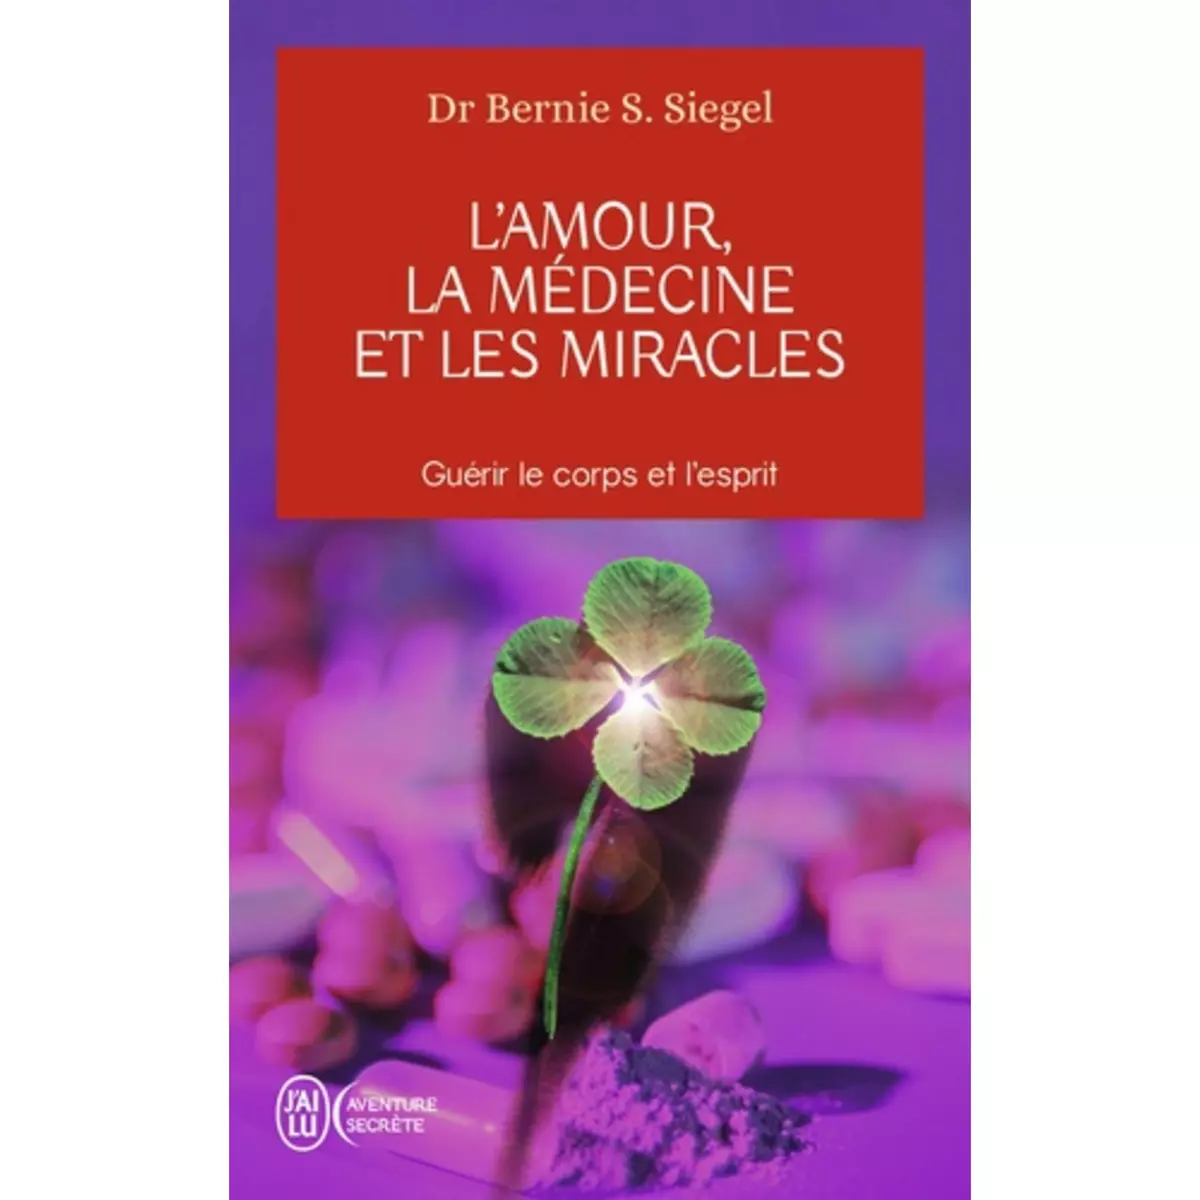  L'AMOUR, LA MEDECINE ET LES MIRACLES, Siegel Bernie